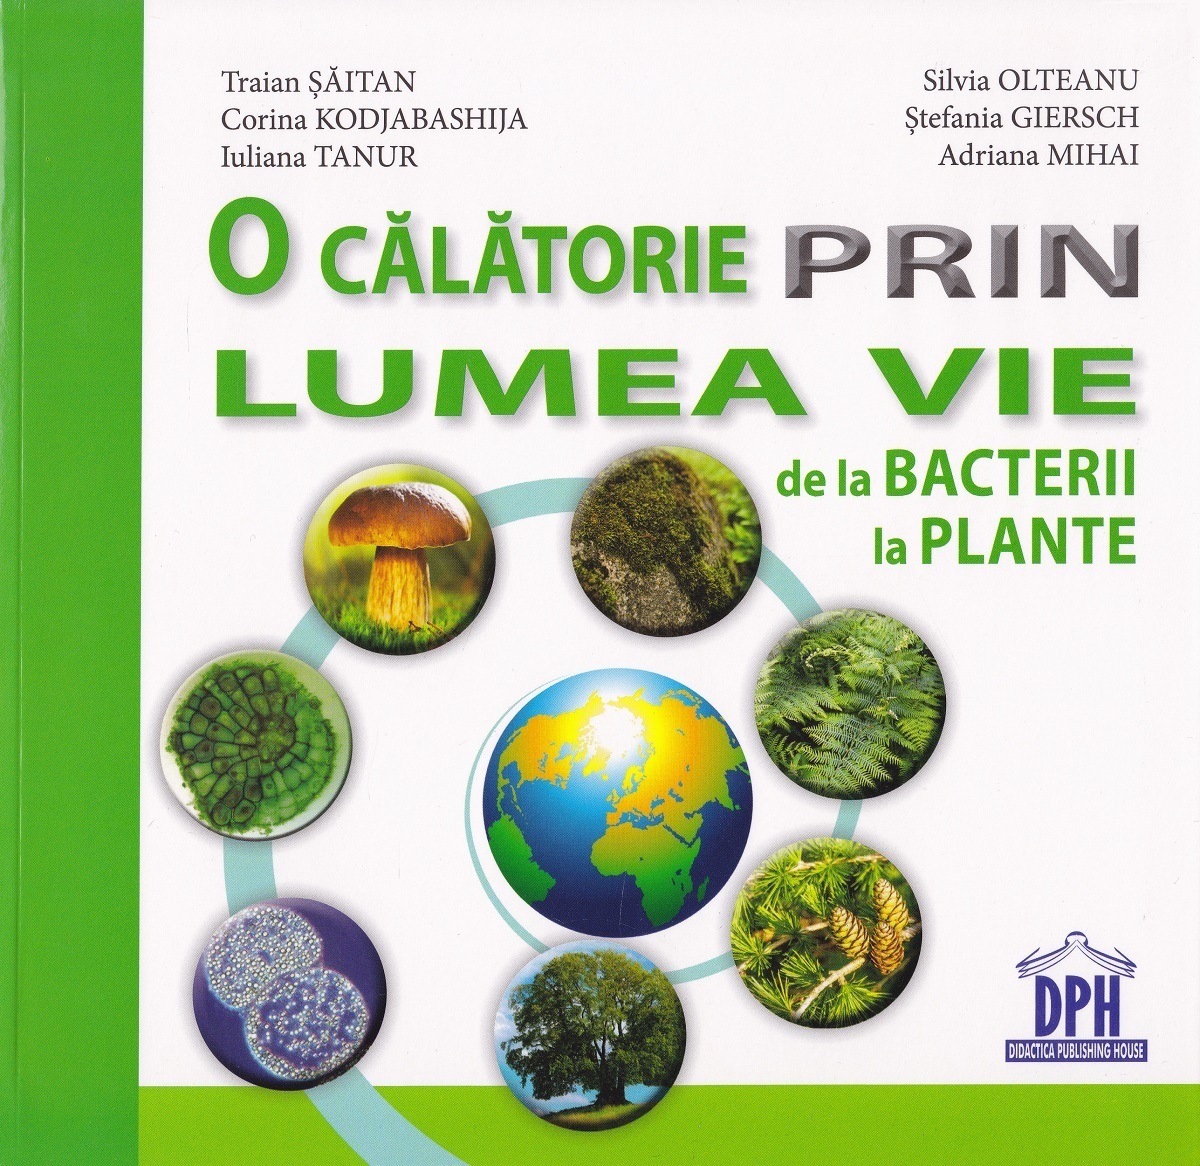 O calatorie prin lumea vie: de la bacterii la plante - Traian Saitan, Silvia Ollteanu